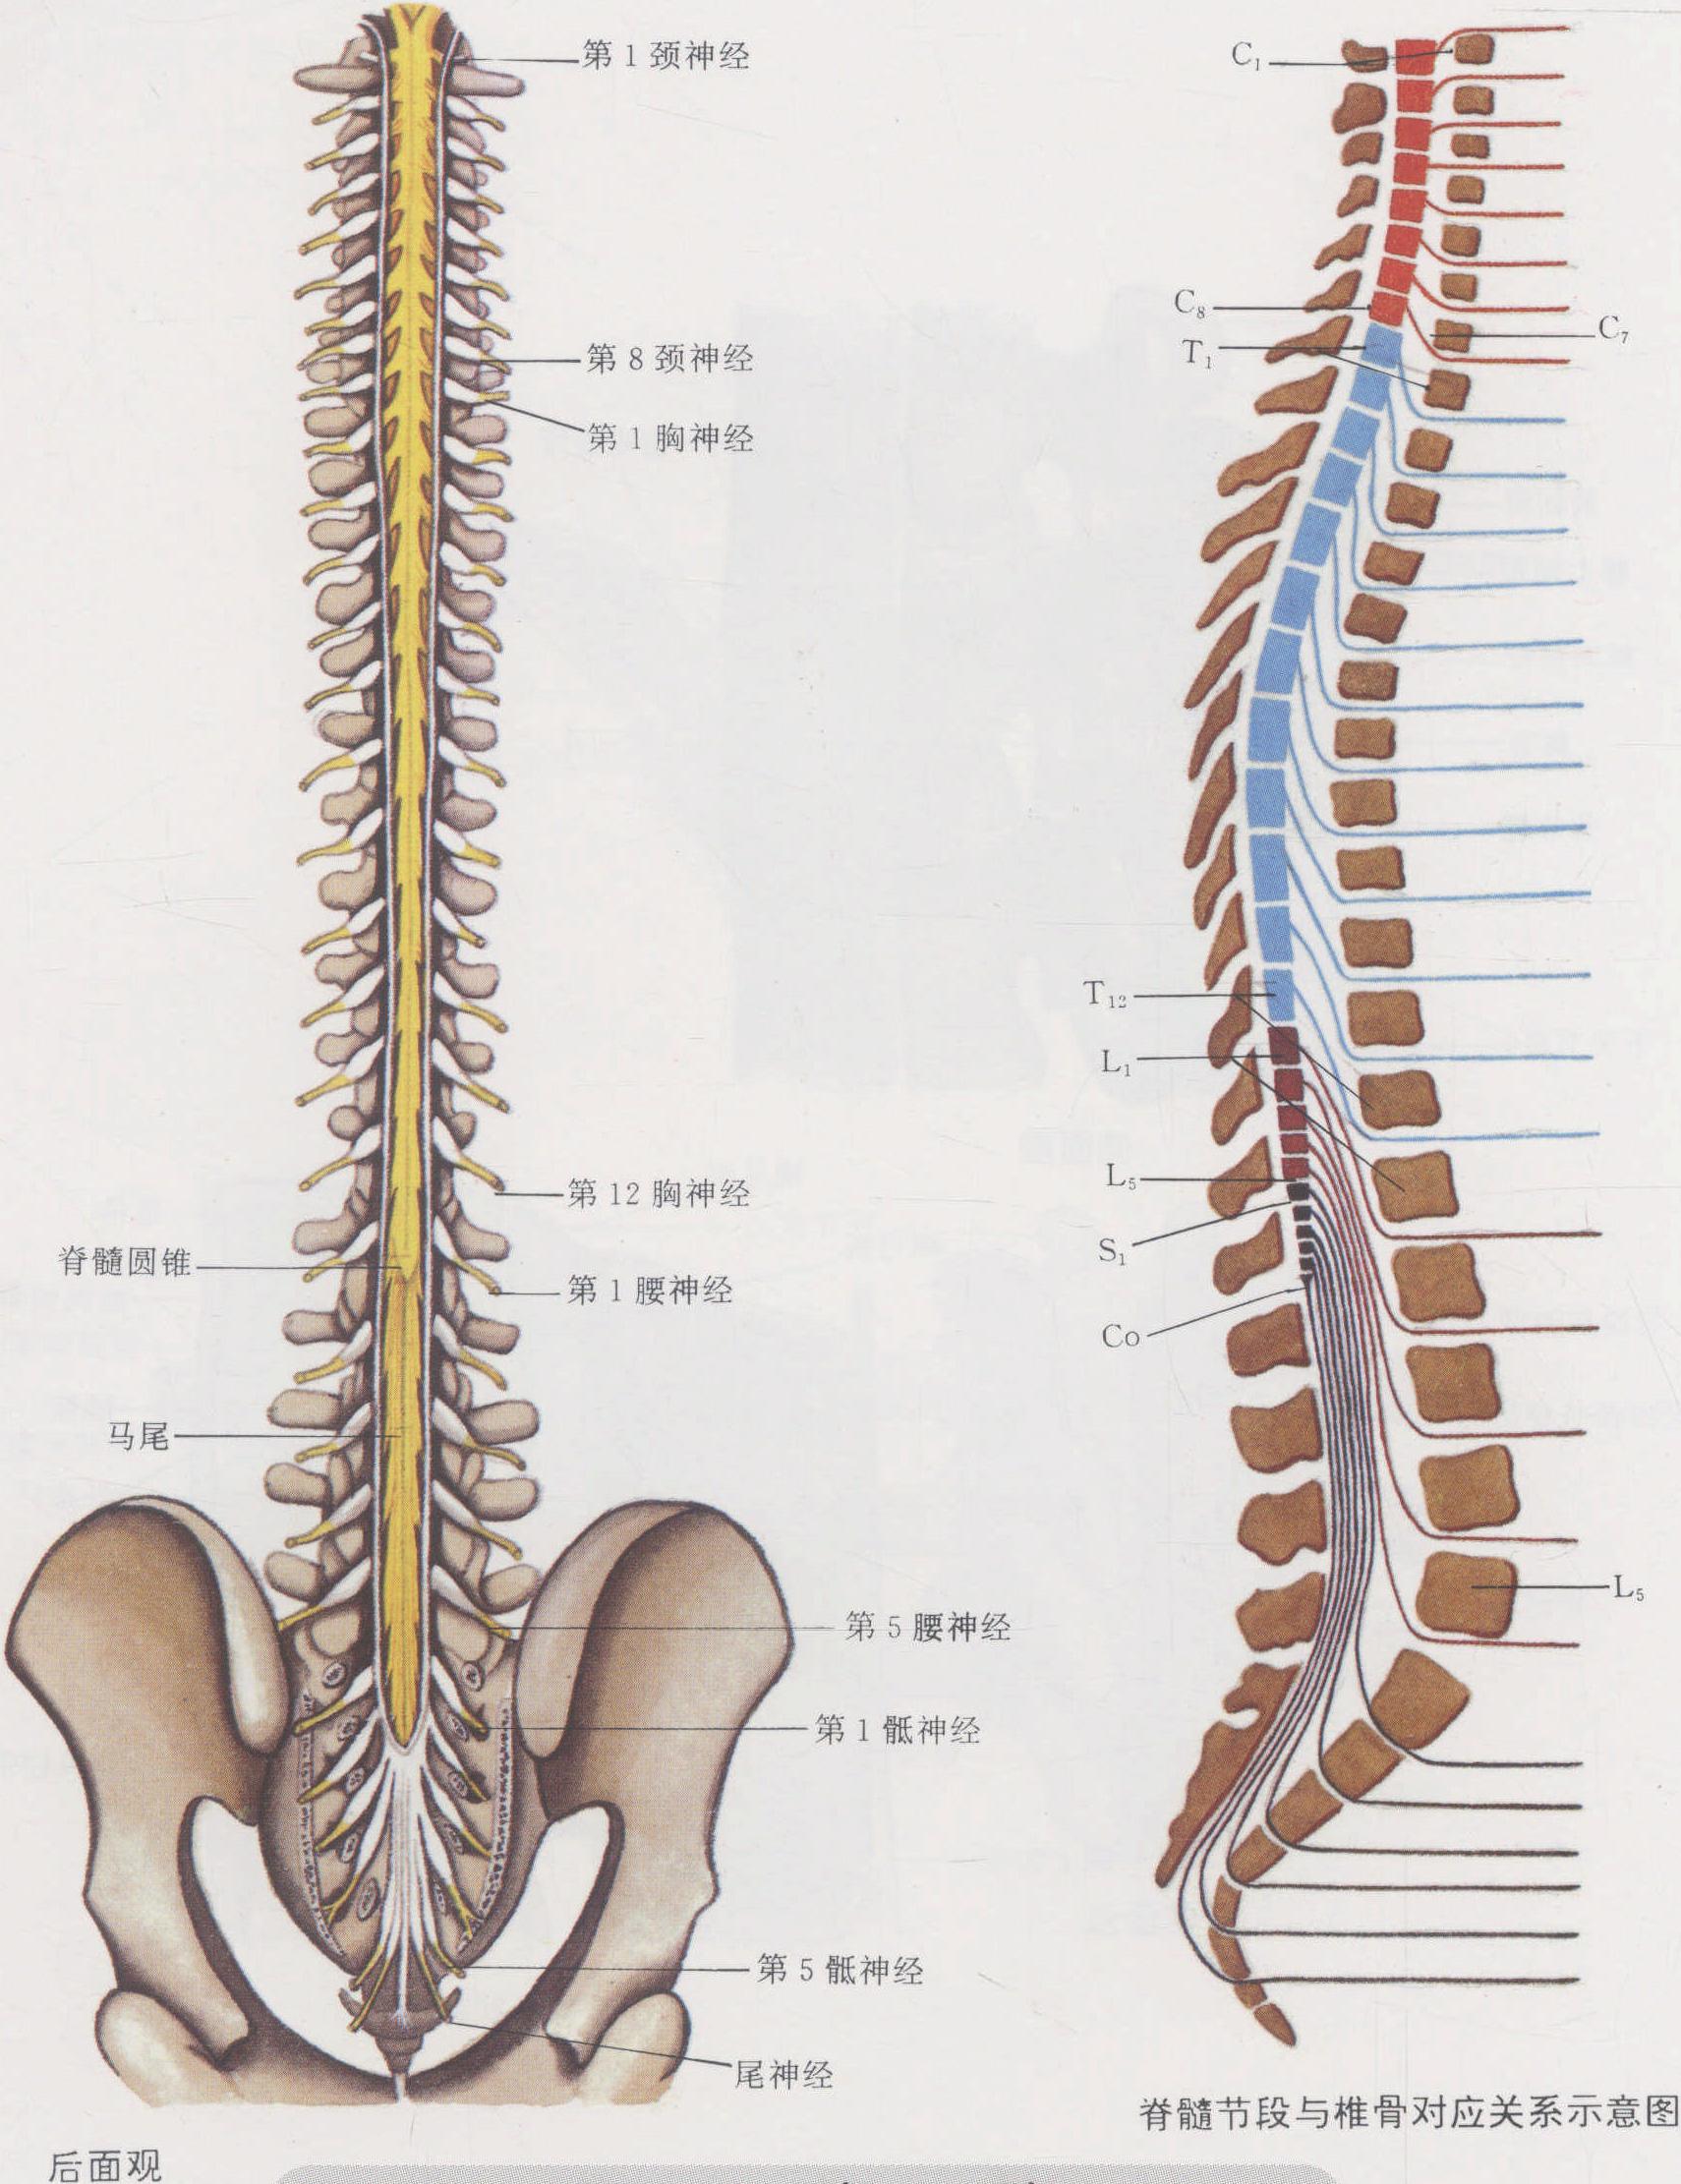 【干货收藏】脊髓与脊椎相关定位知识点 - 脑医汇 - 神外资讯 - 神介资讯